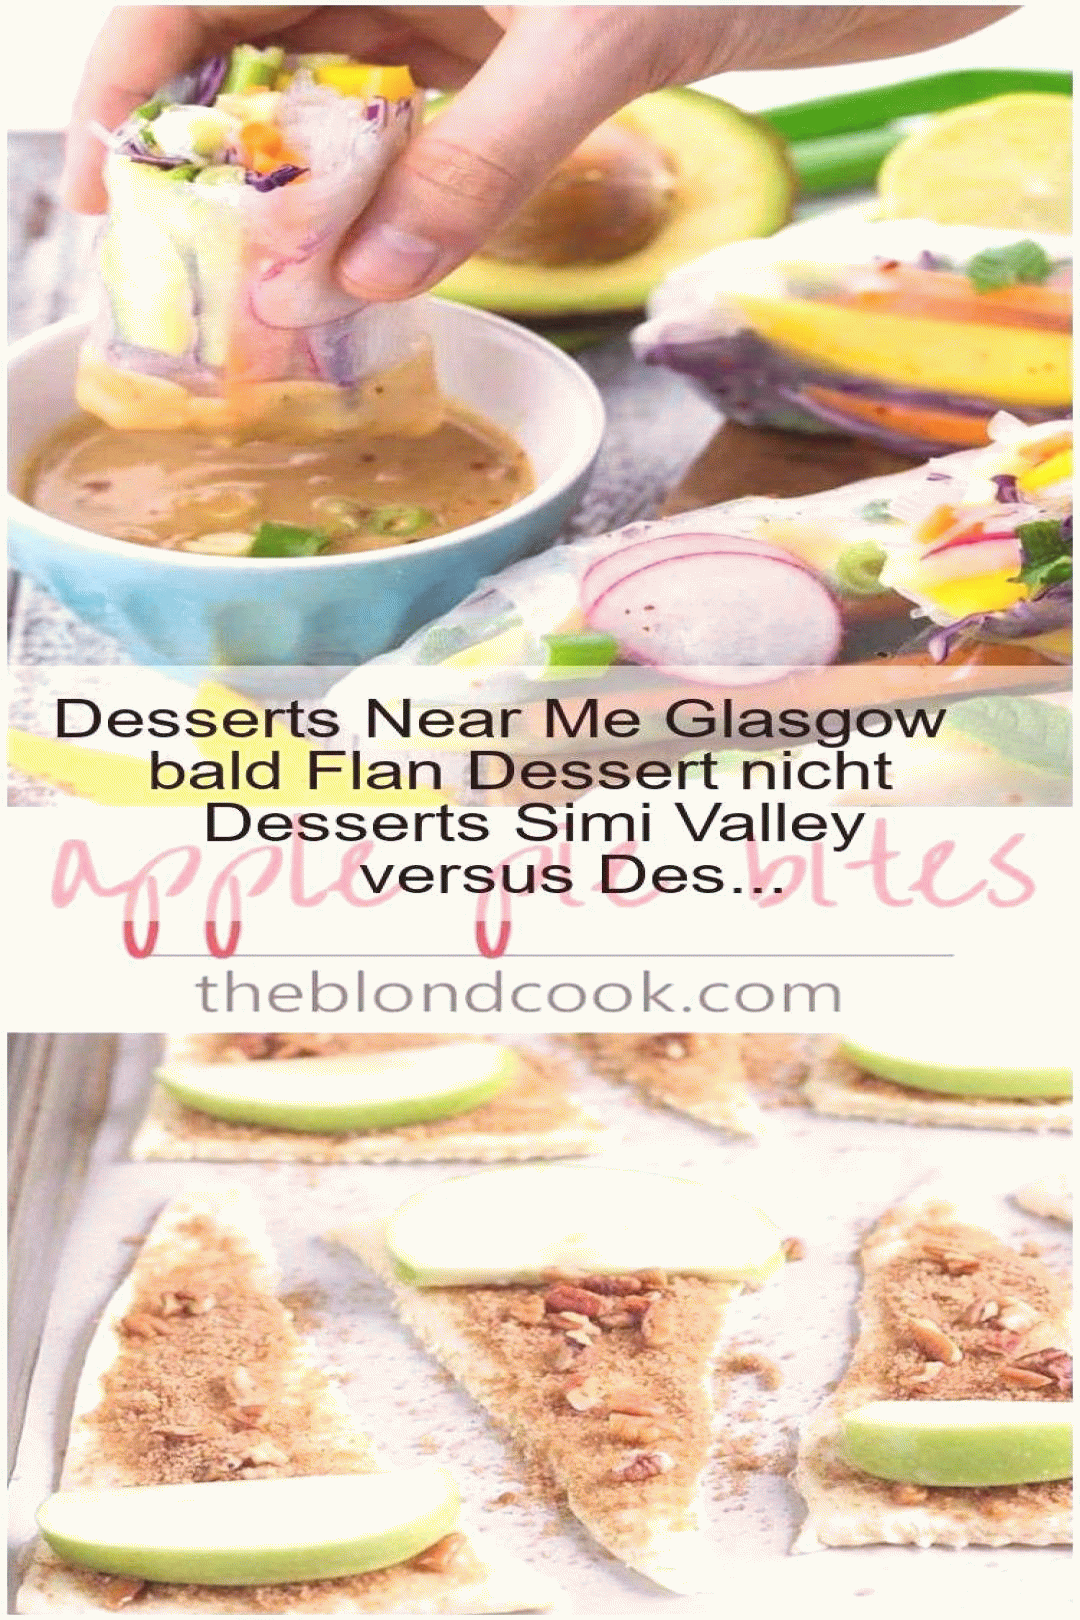 desserts near me glasgow bald flan dessert nicht simi valley versus des cookie recipes gif small